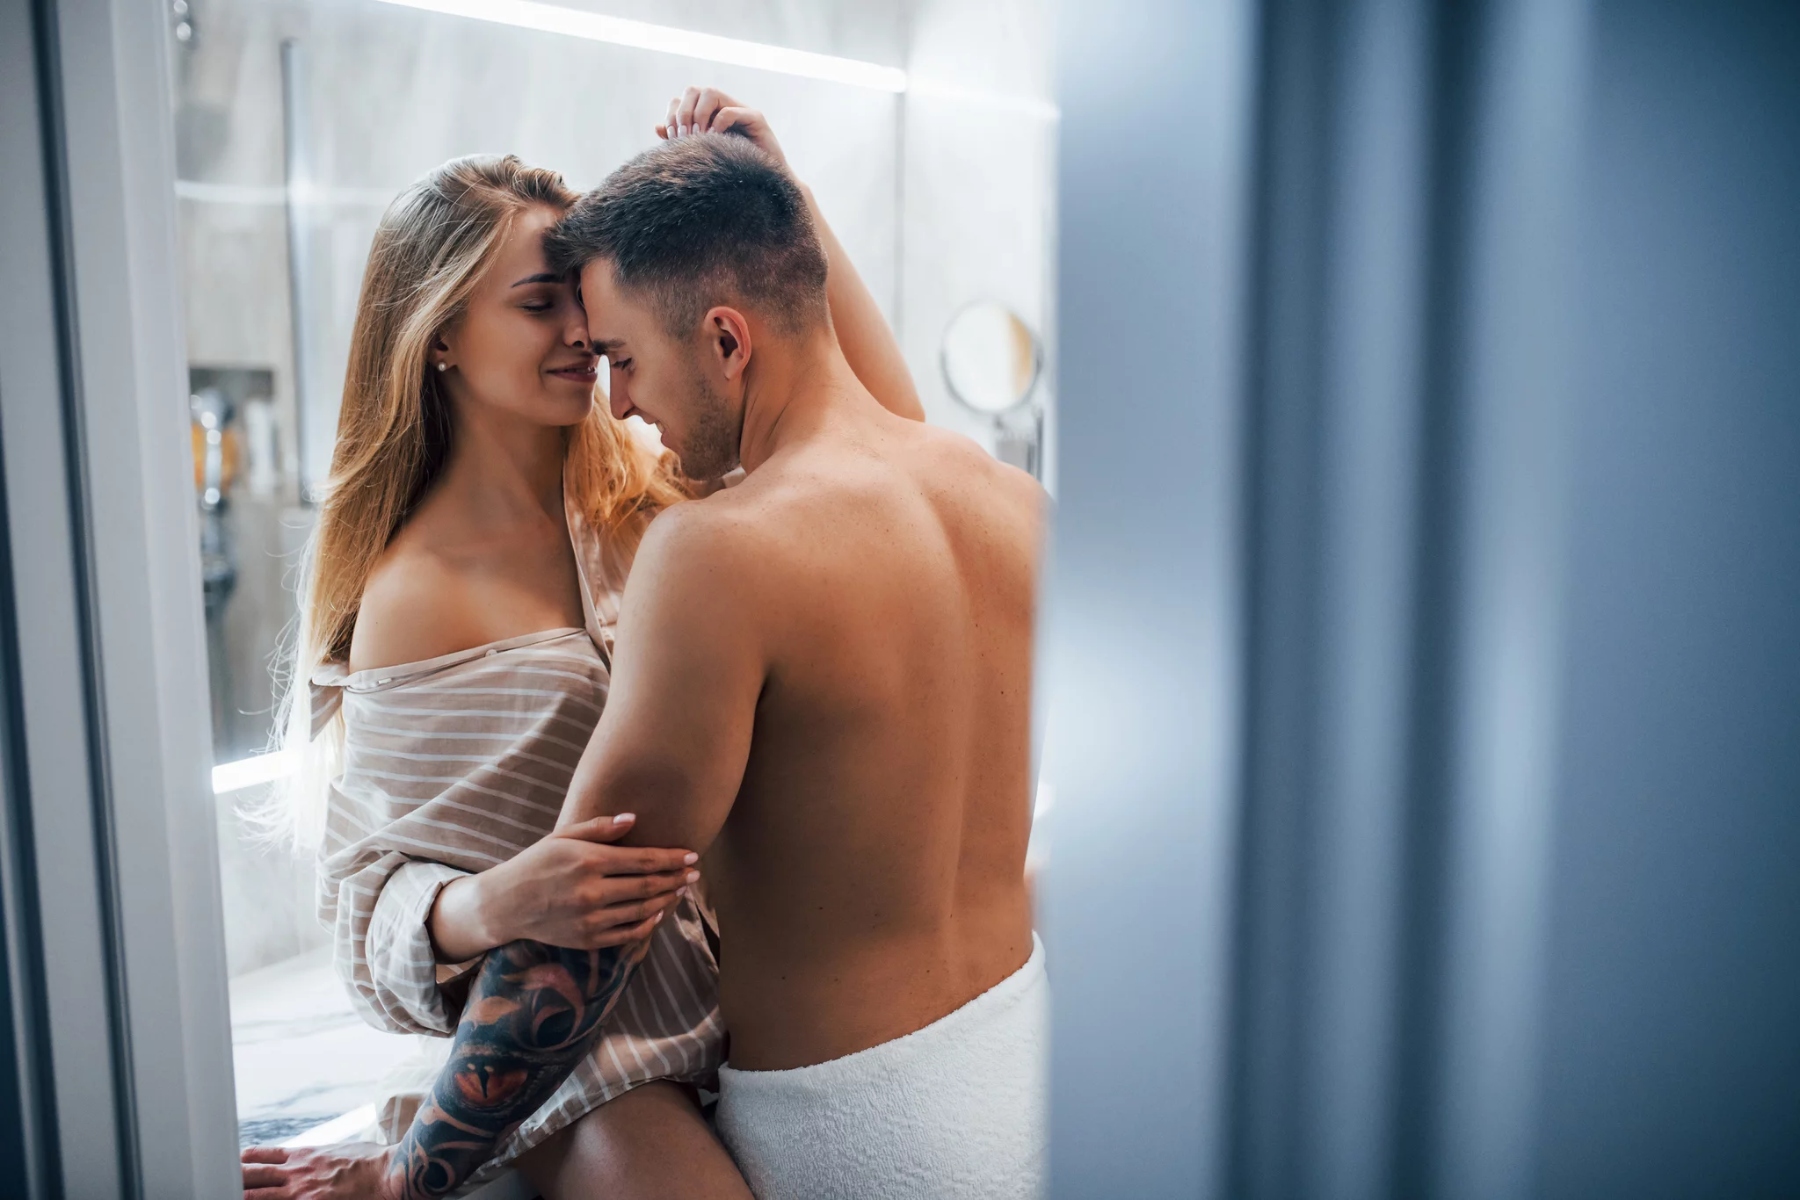 Σεξ μπάνιο: Πώς να κυριαρχήσετε στην τέχνη του σεξ στο μπάνιο